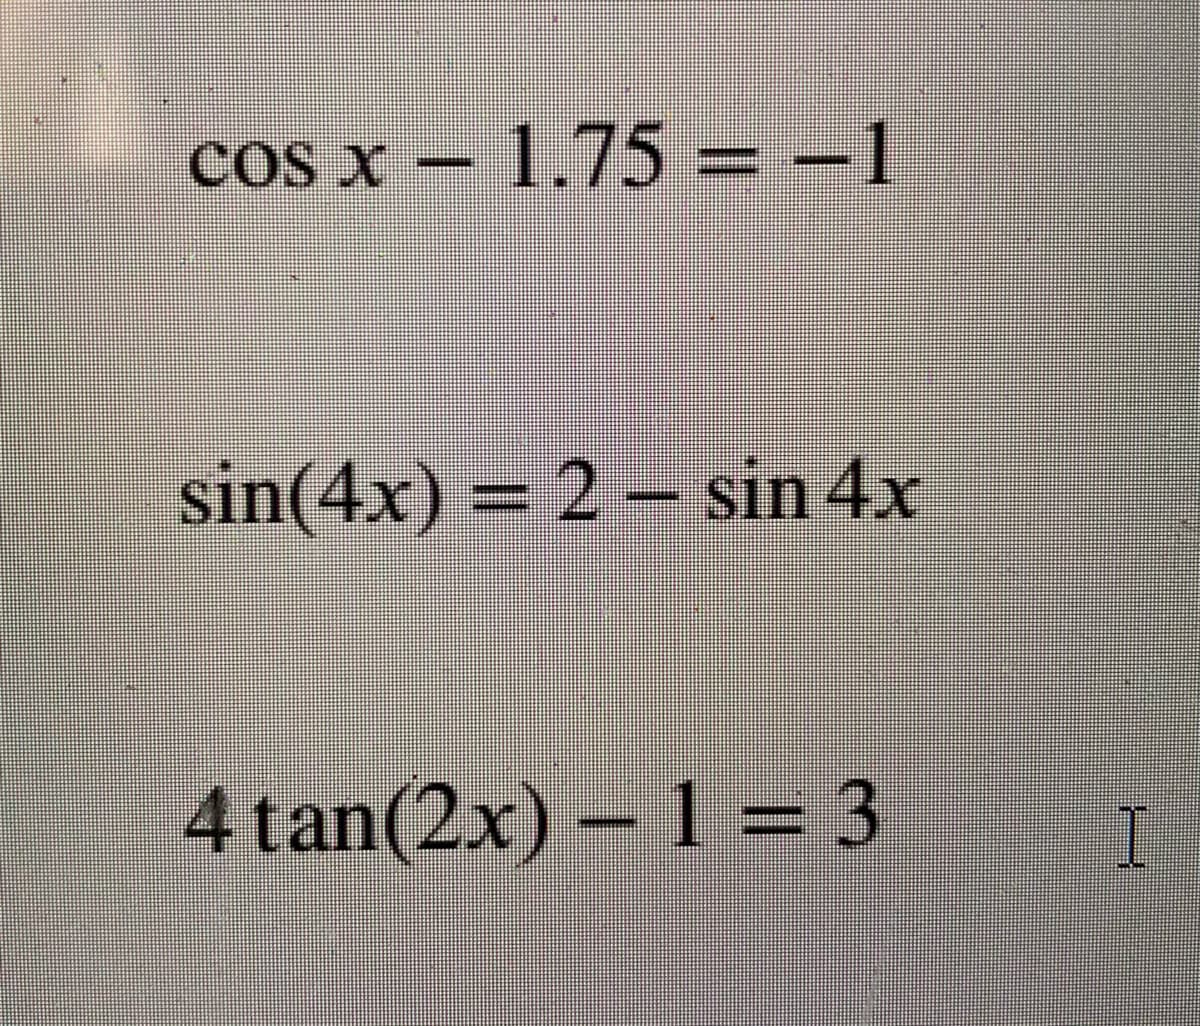 COs X
cos x – 1.75 = –1
sin(4x)
= 2 – sin 4x
4tan(2x) – 1 = 3
